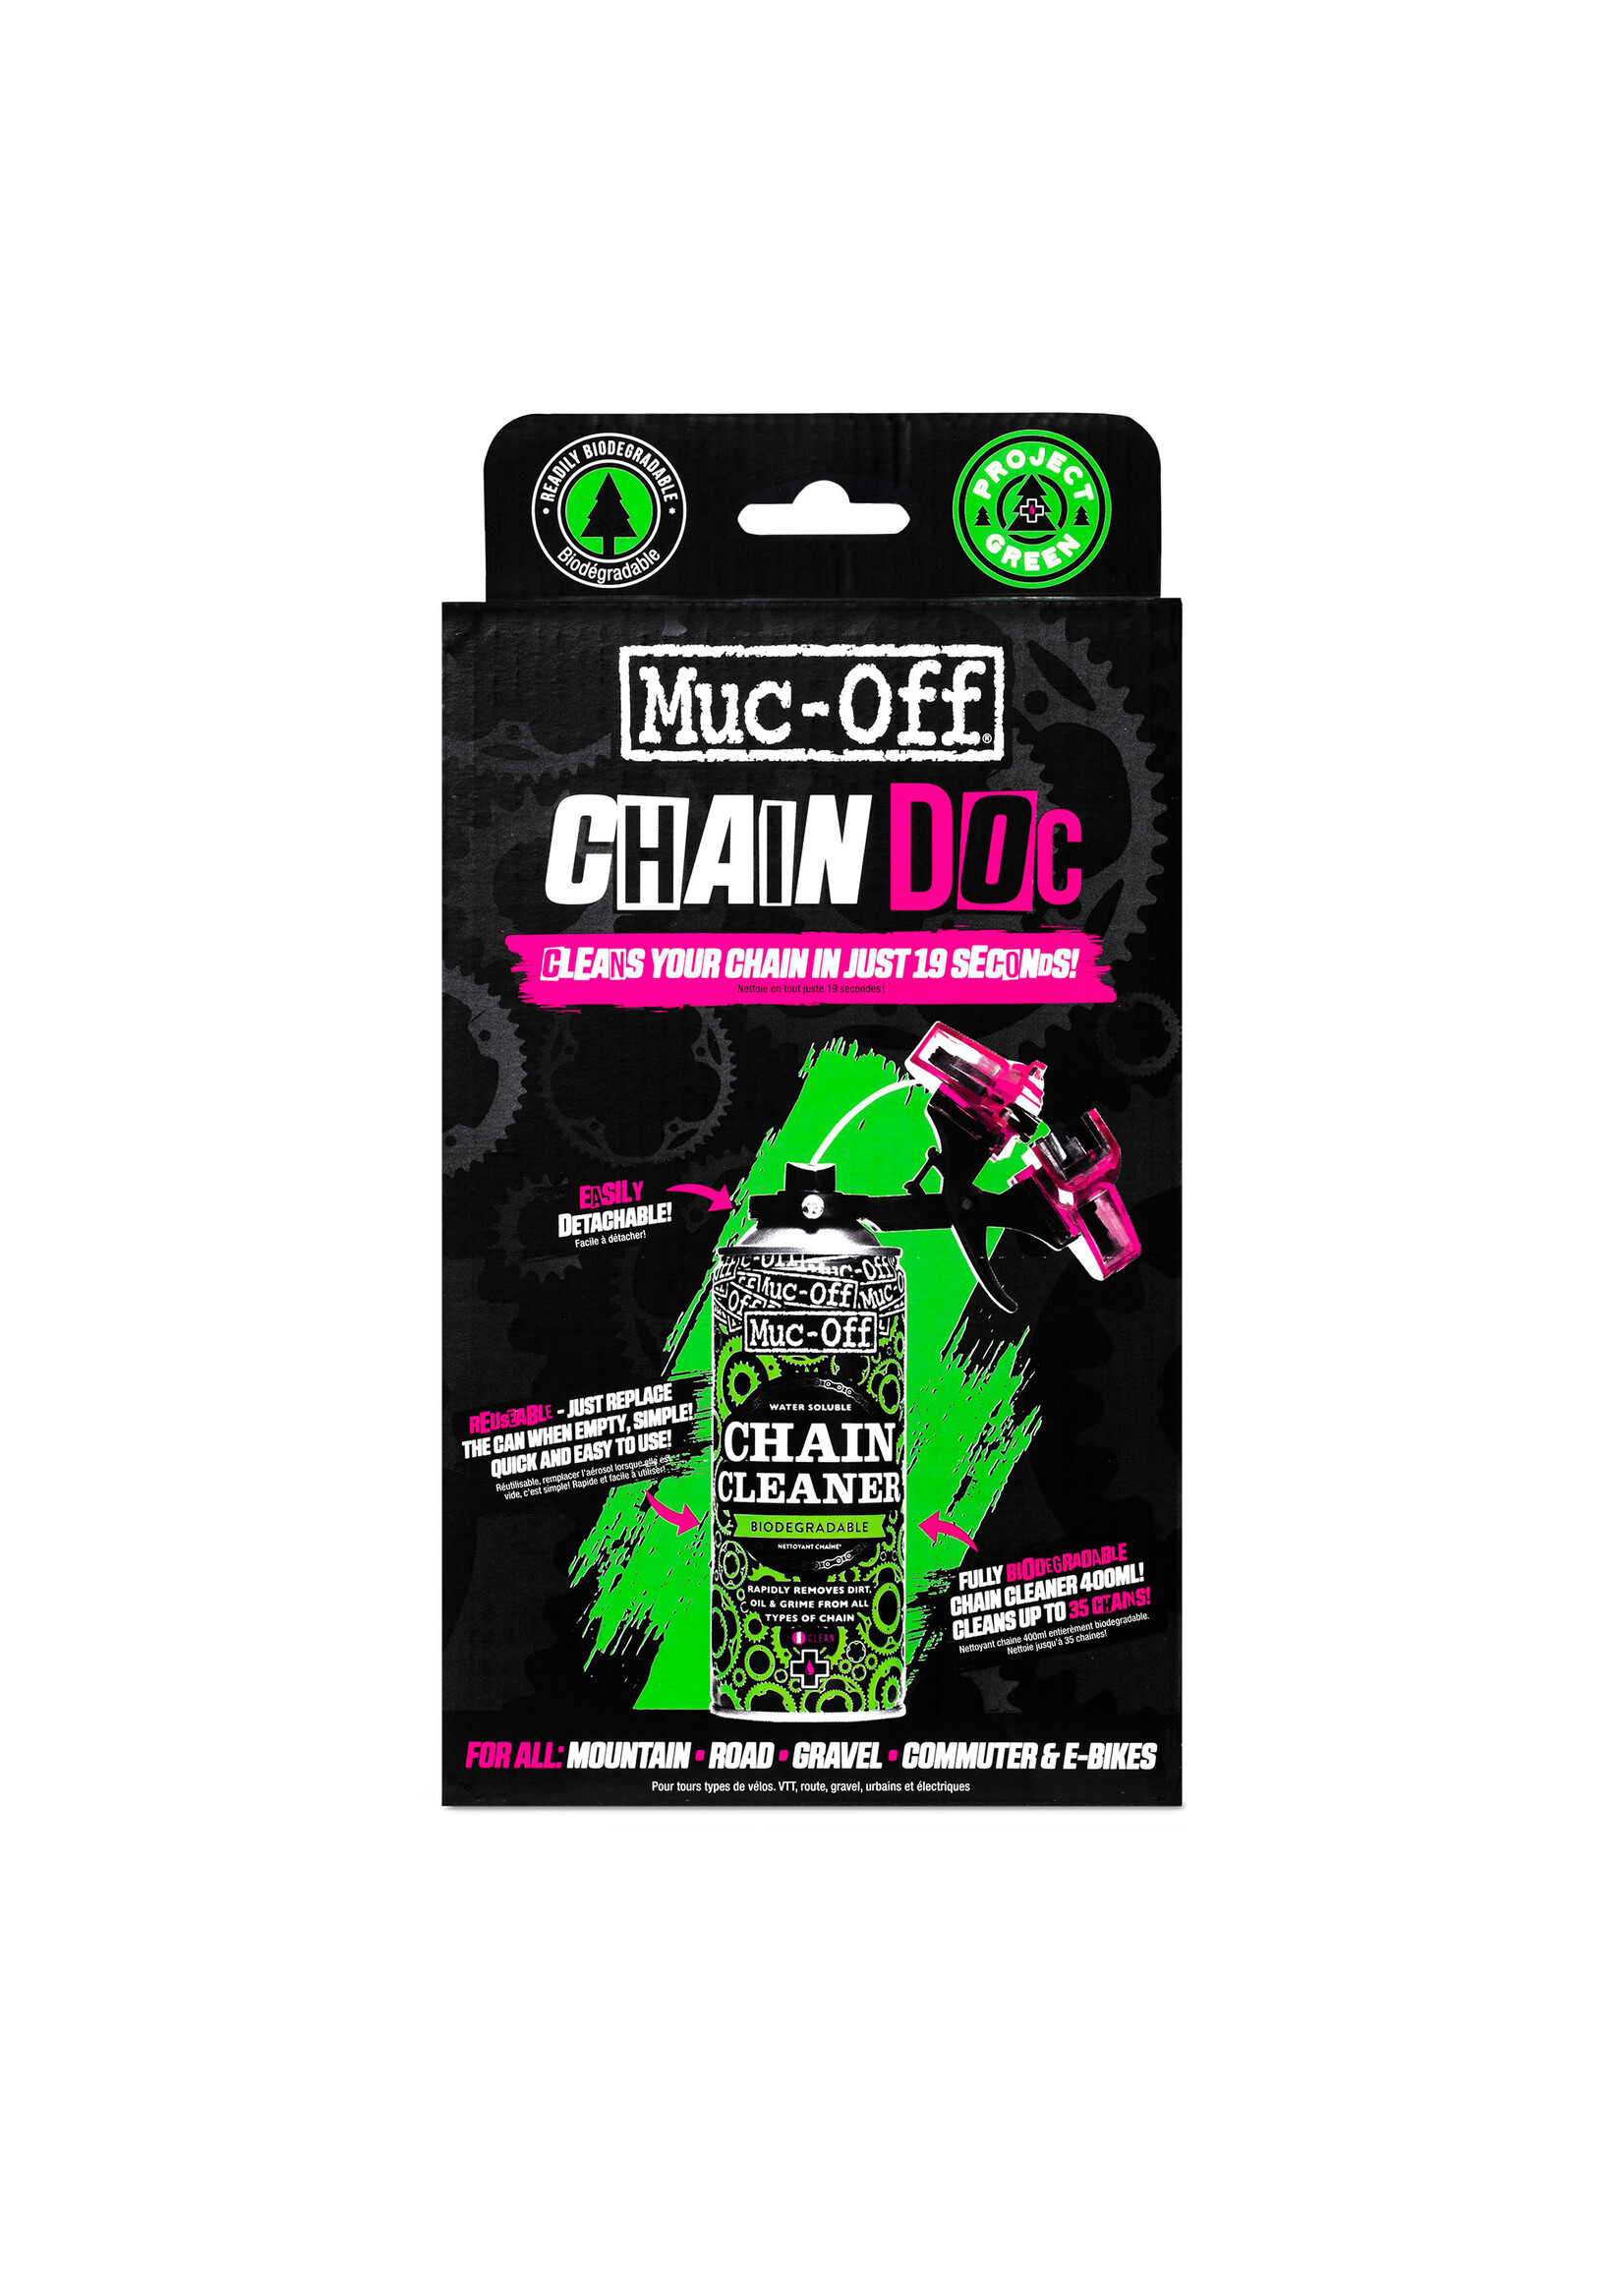 Muc-Off Muc-Off Chain Doc